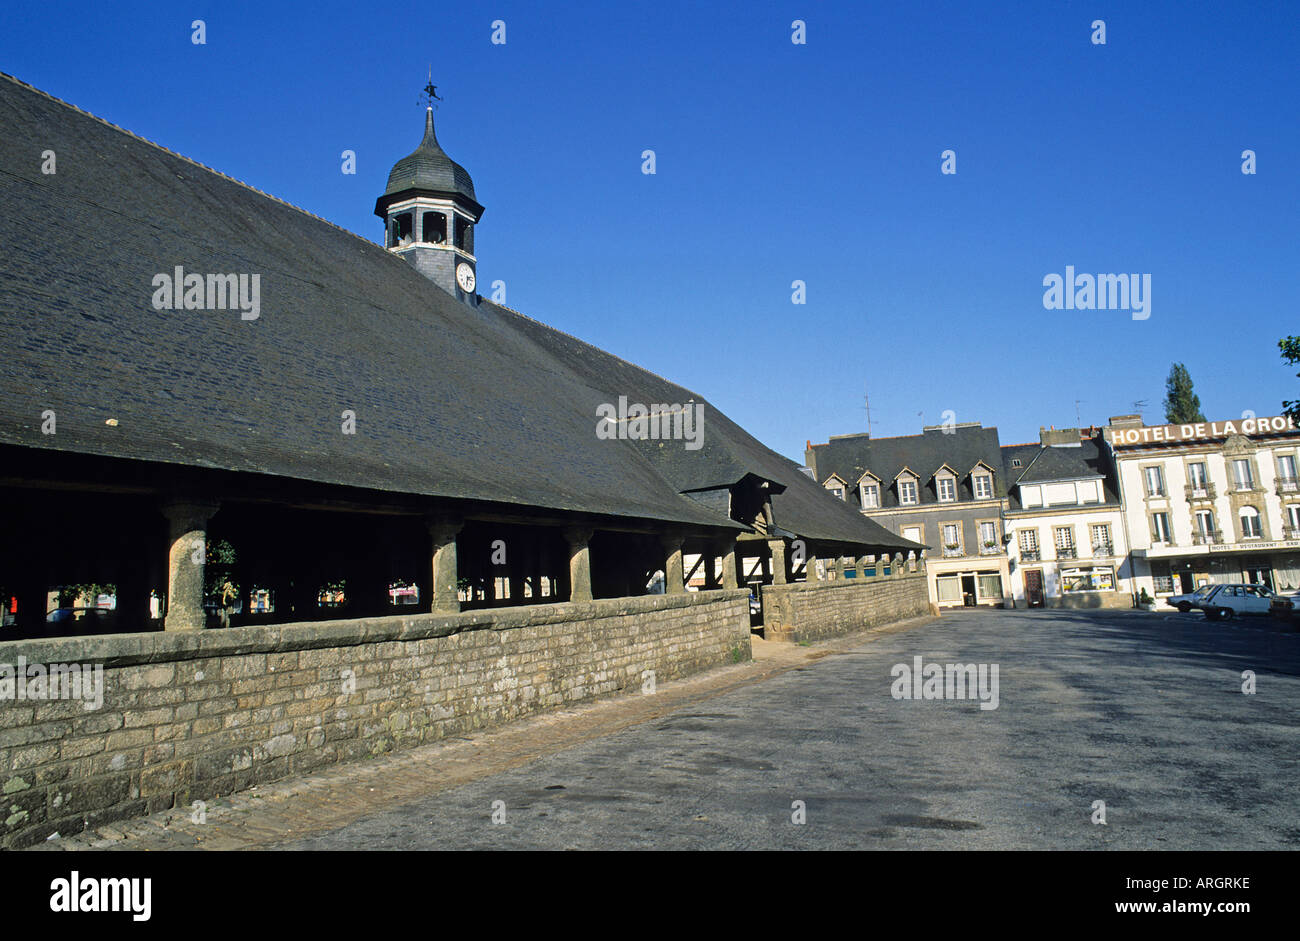 Pinnacle un dôme couronnant le grand toit d'ardoises de la 16e siècle  halles ou marché couvert dans le centre du village de Le Faouet Photo Stock  - Alamy